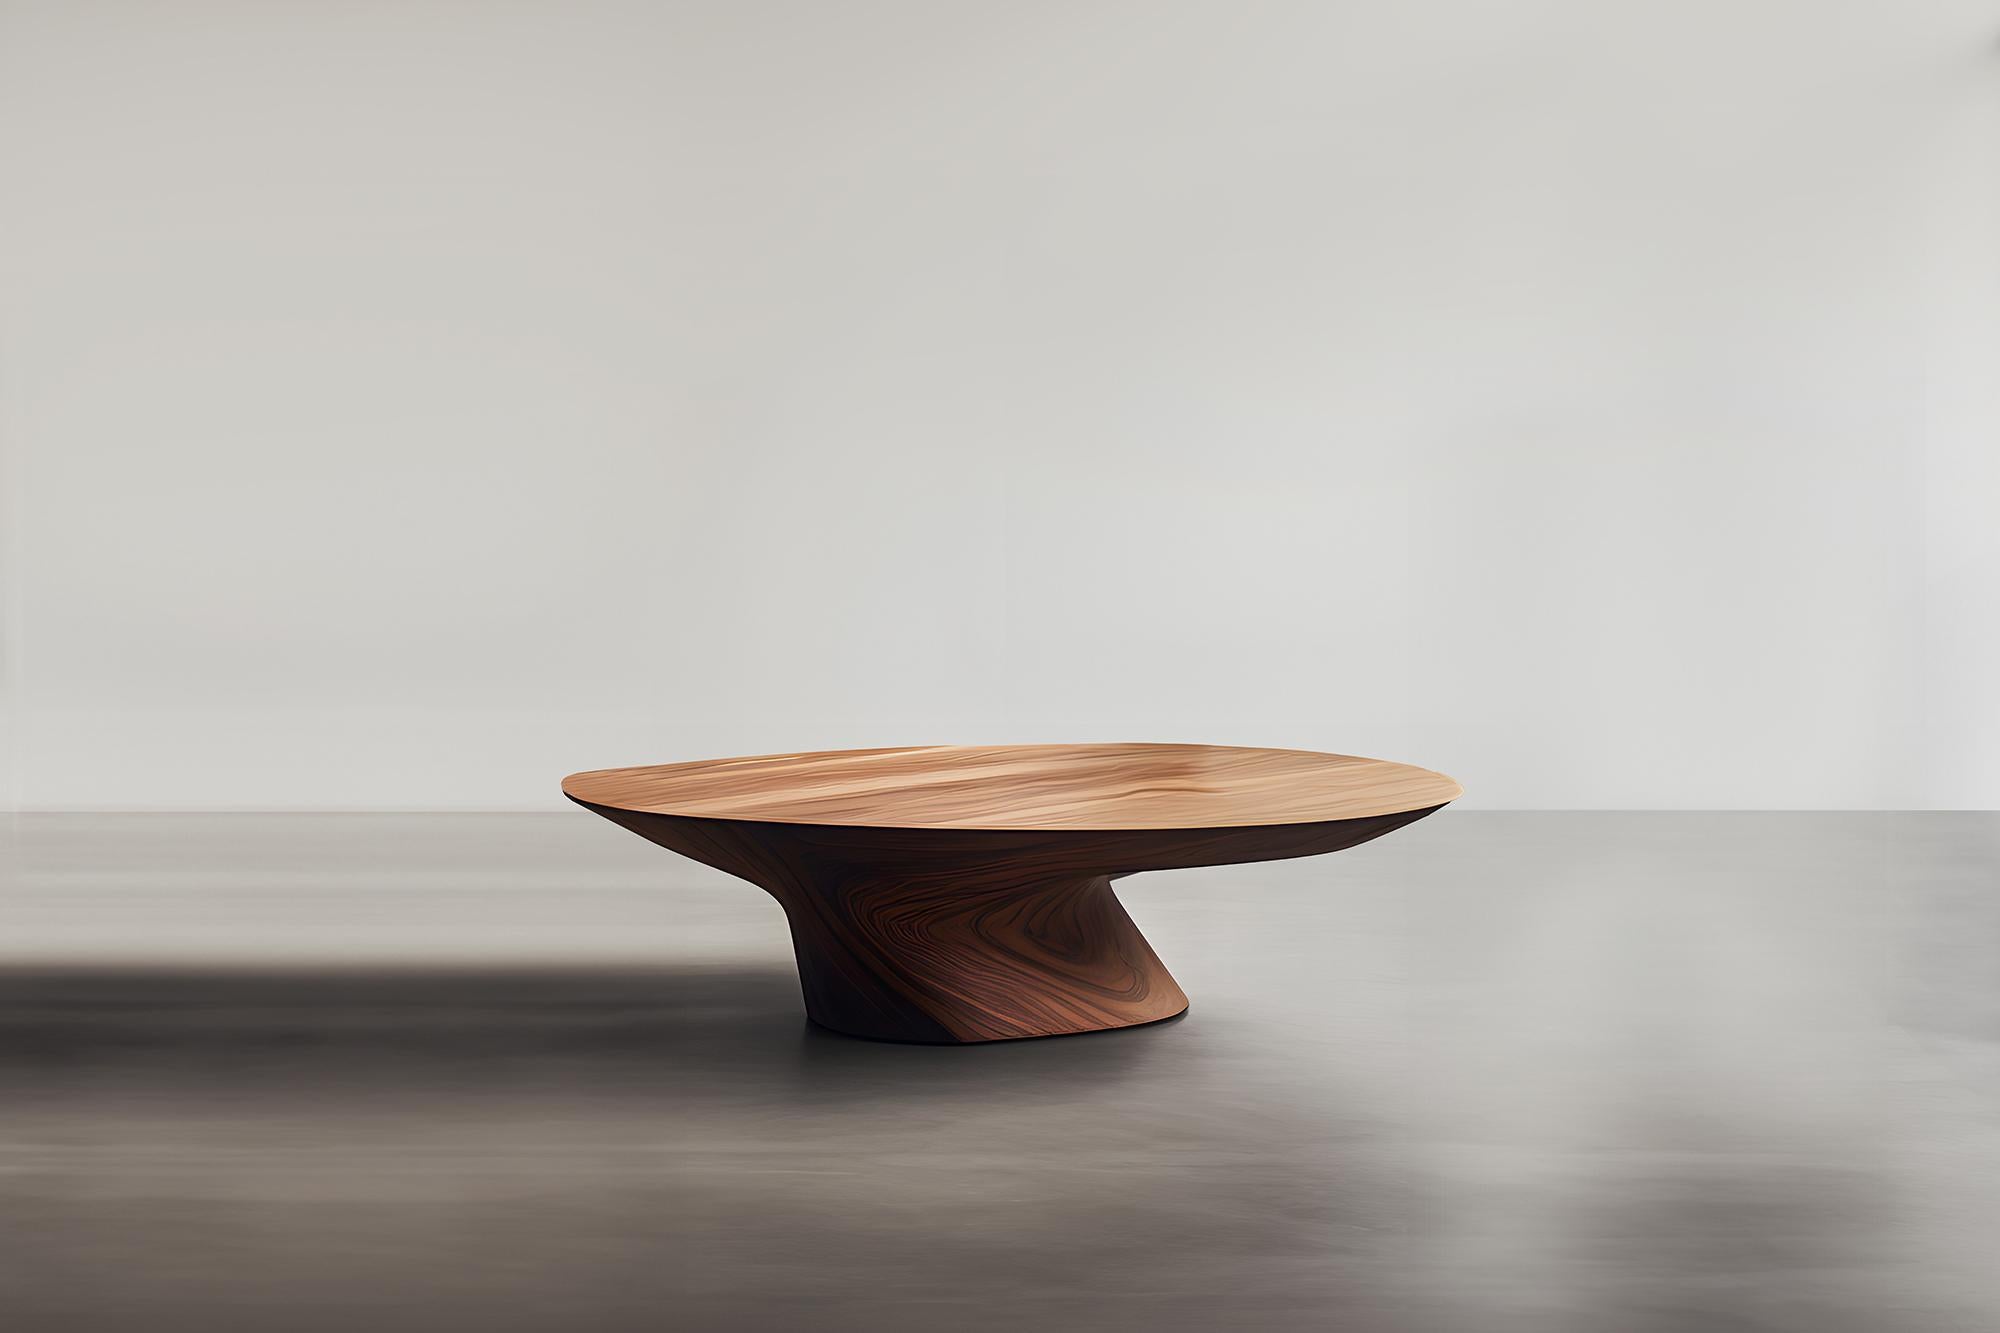 Skulpturaler Couchtisch aus Massivholz, Mitteltisch Solace S47  von Joel Escalona


Die Tischserie Solace, entworfen von Joel Escalona, ist eine Möbelkollektion, die dank ihrer sinnlichen, dichten und unregelmäßigen Formen Ausgewogenheit und Präsenz